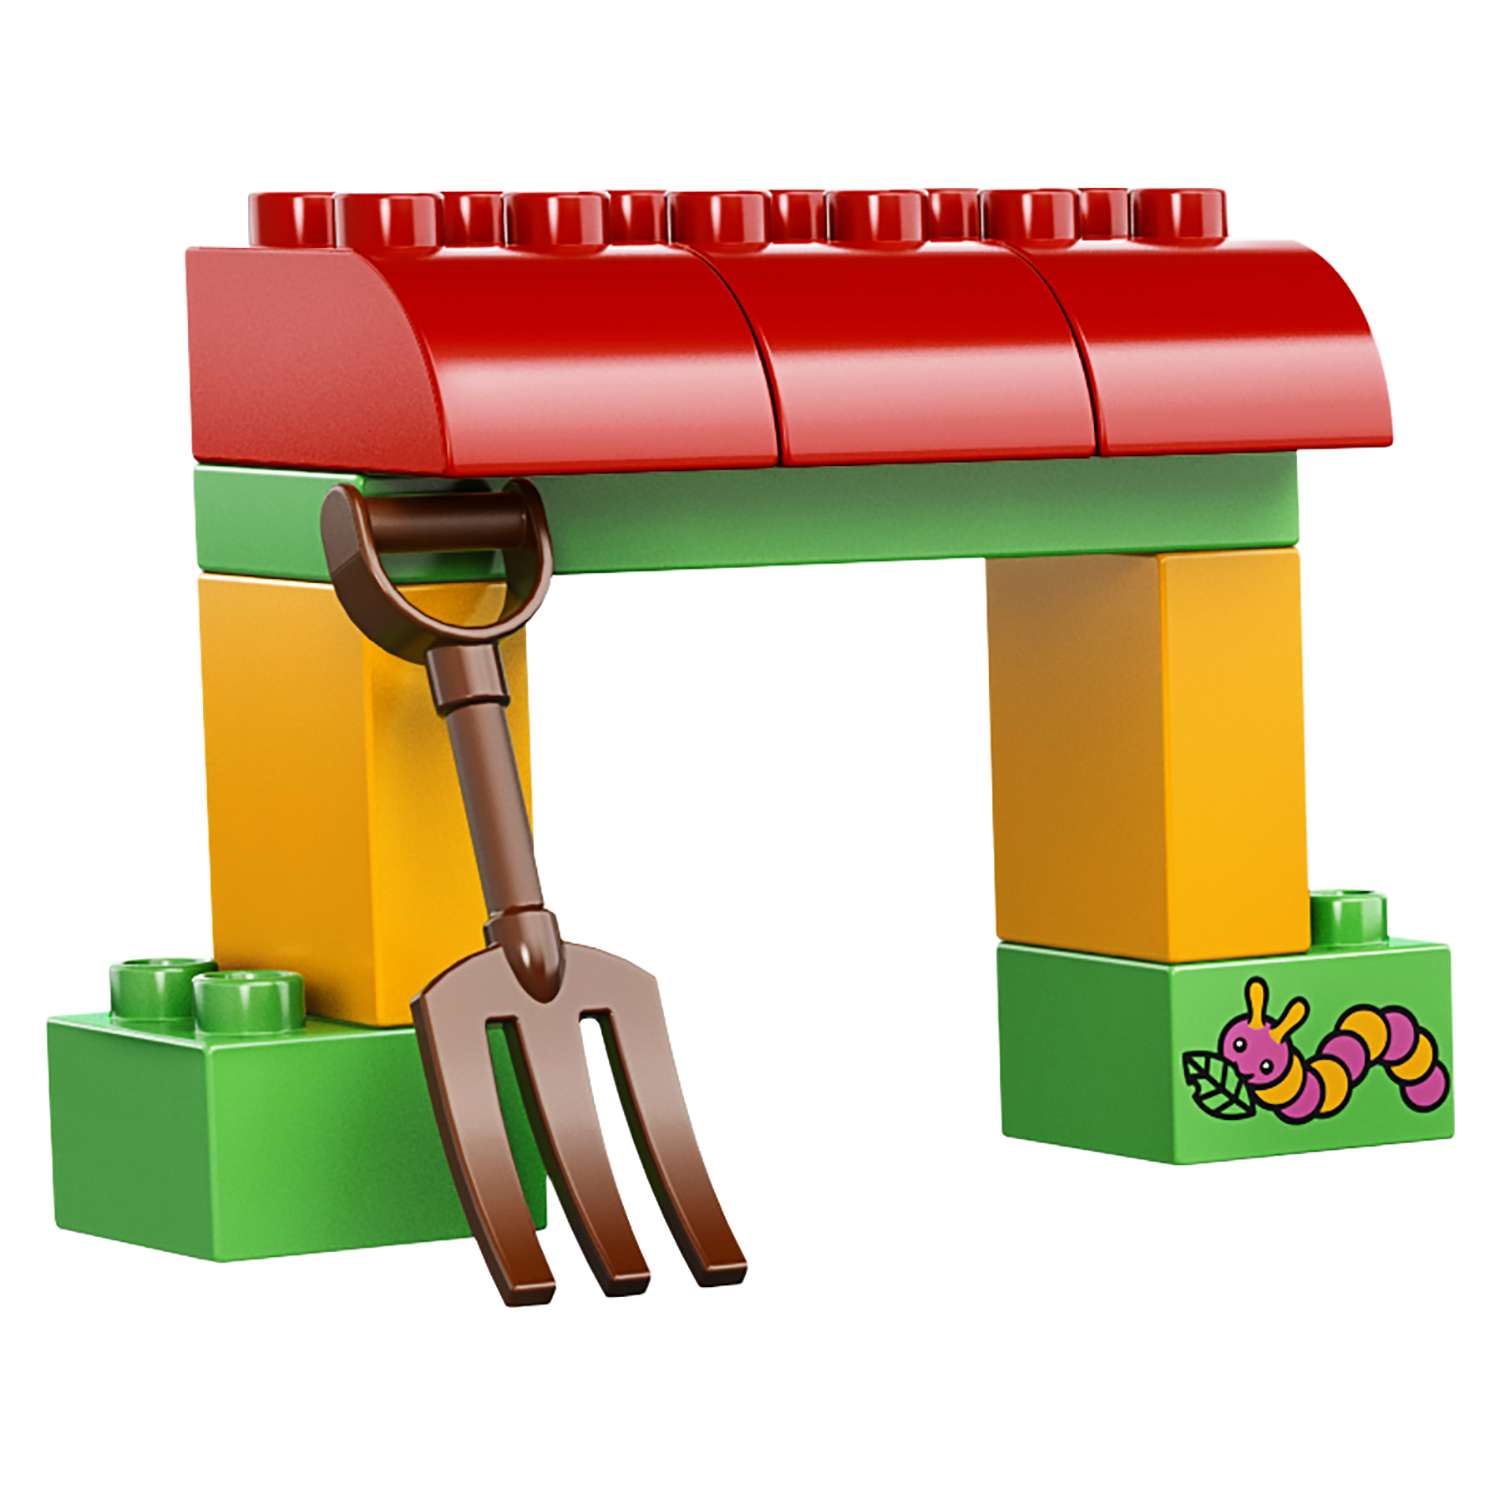 Конструктор LEGO DUPLO Town Сельскохозяйственный трактор (10524) - фото 9